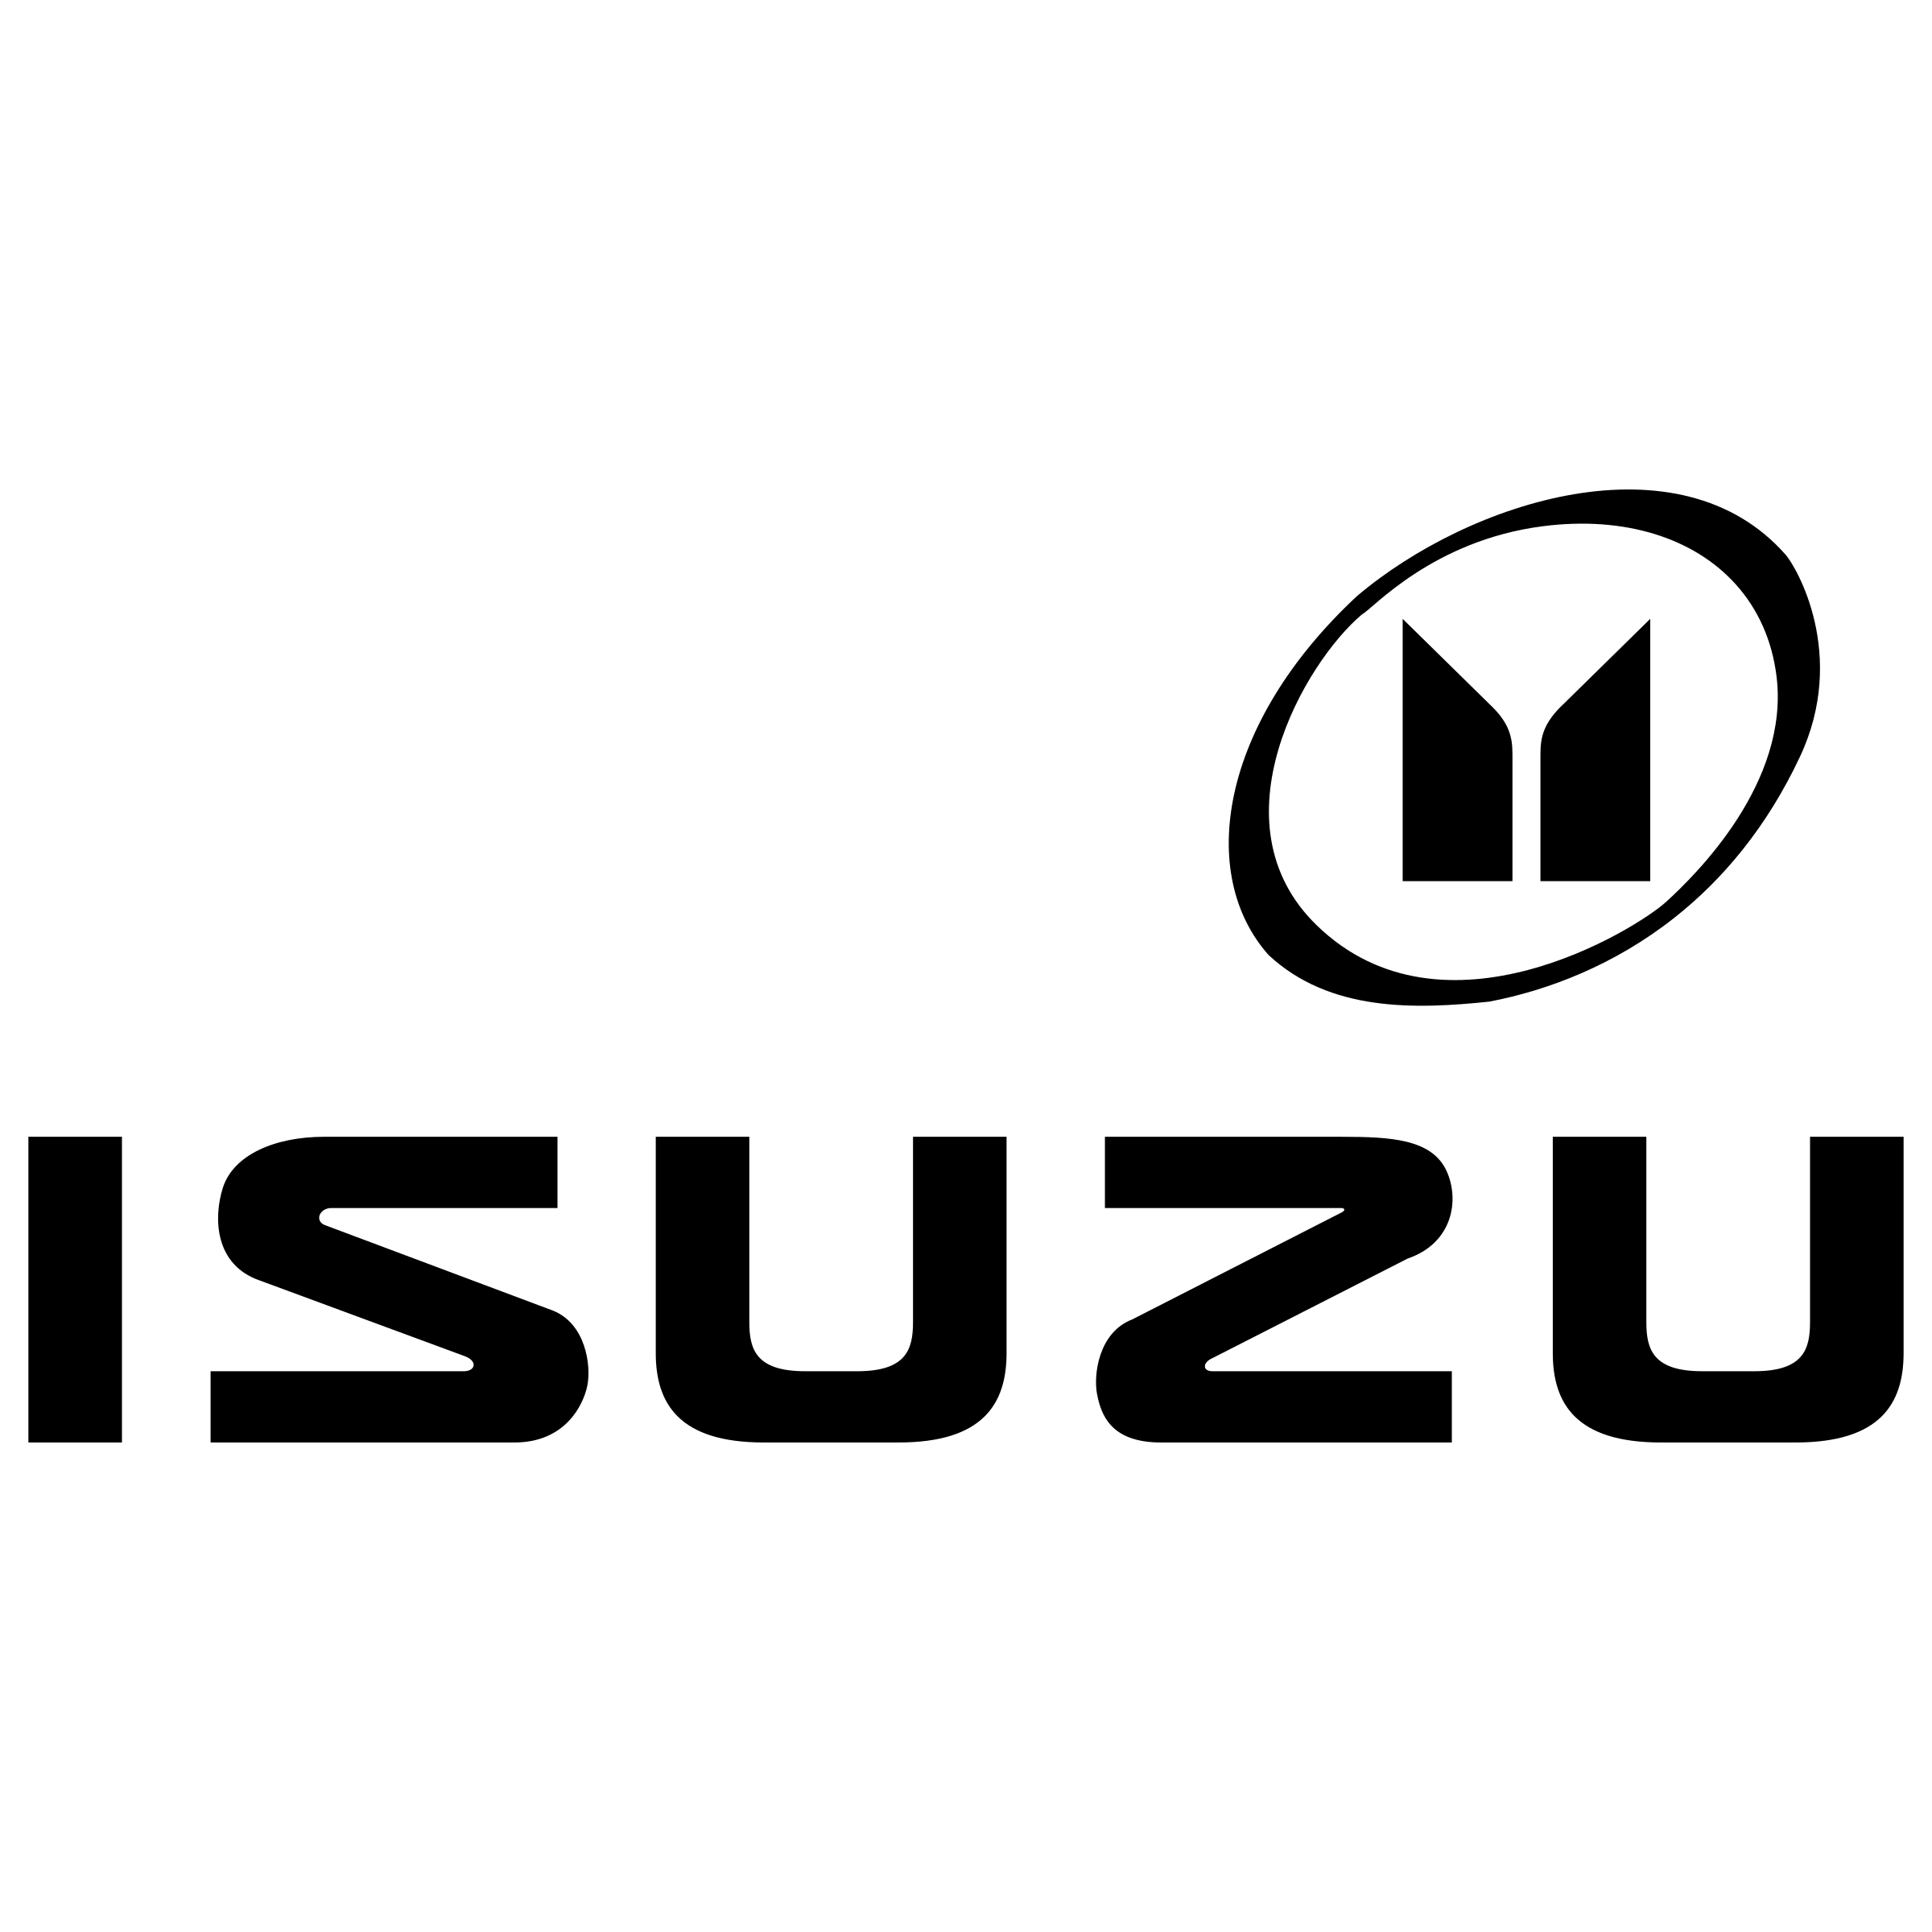 Logotipo da Isuzu